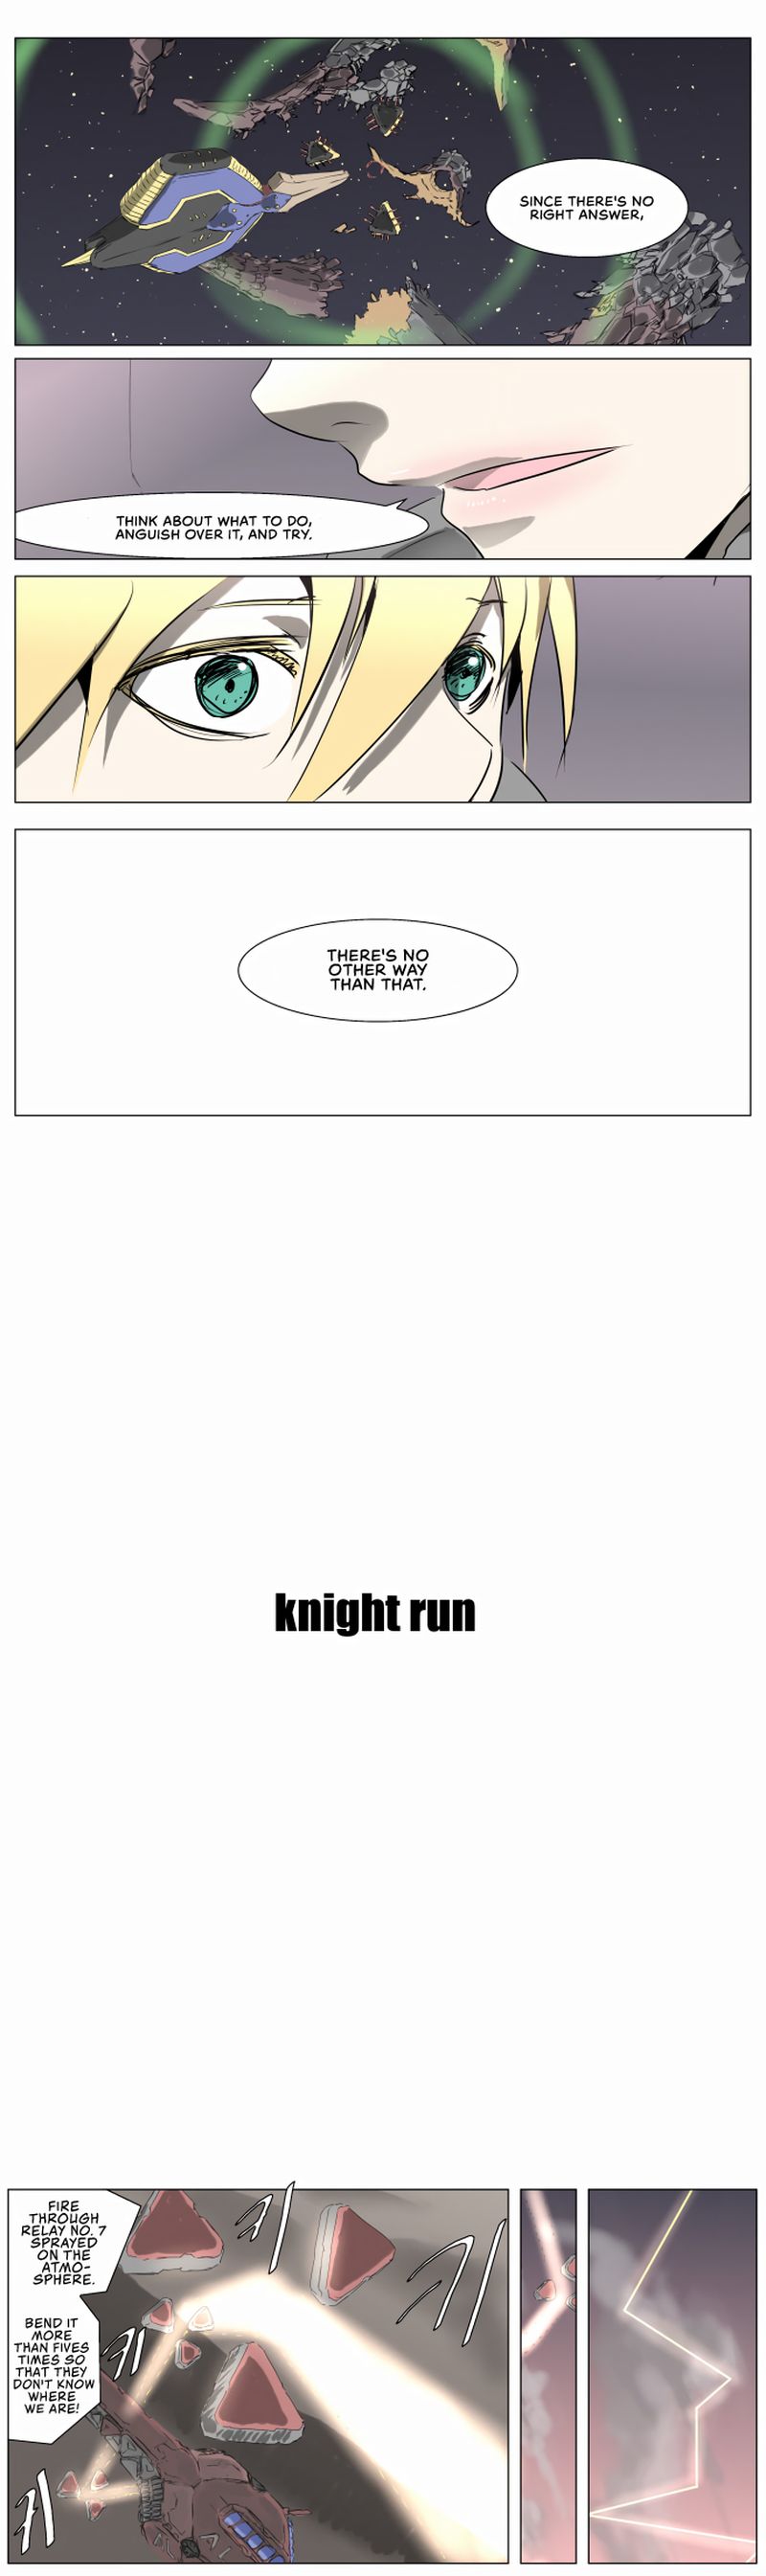 knight_run_234_5